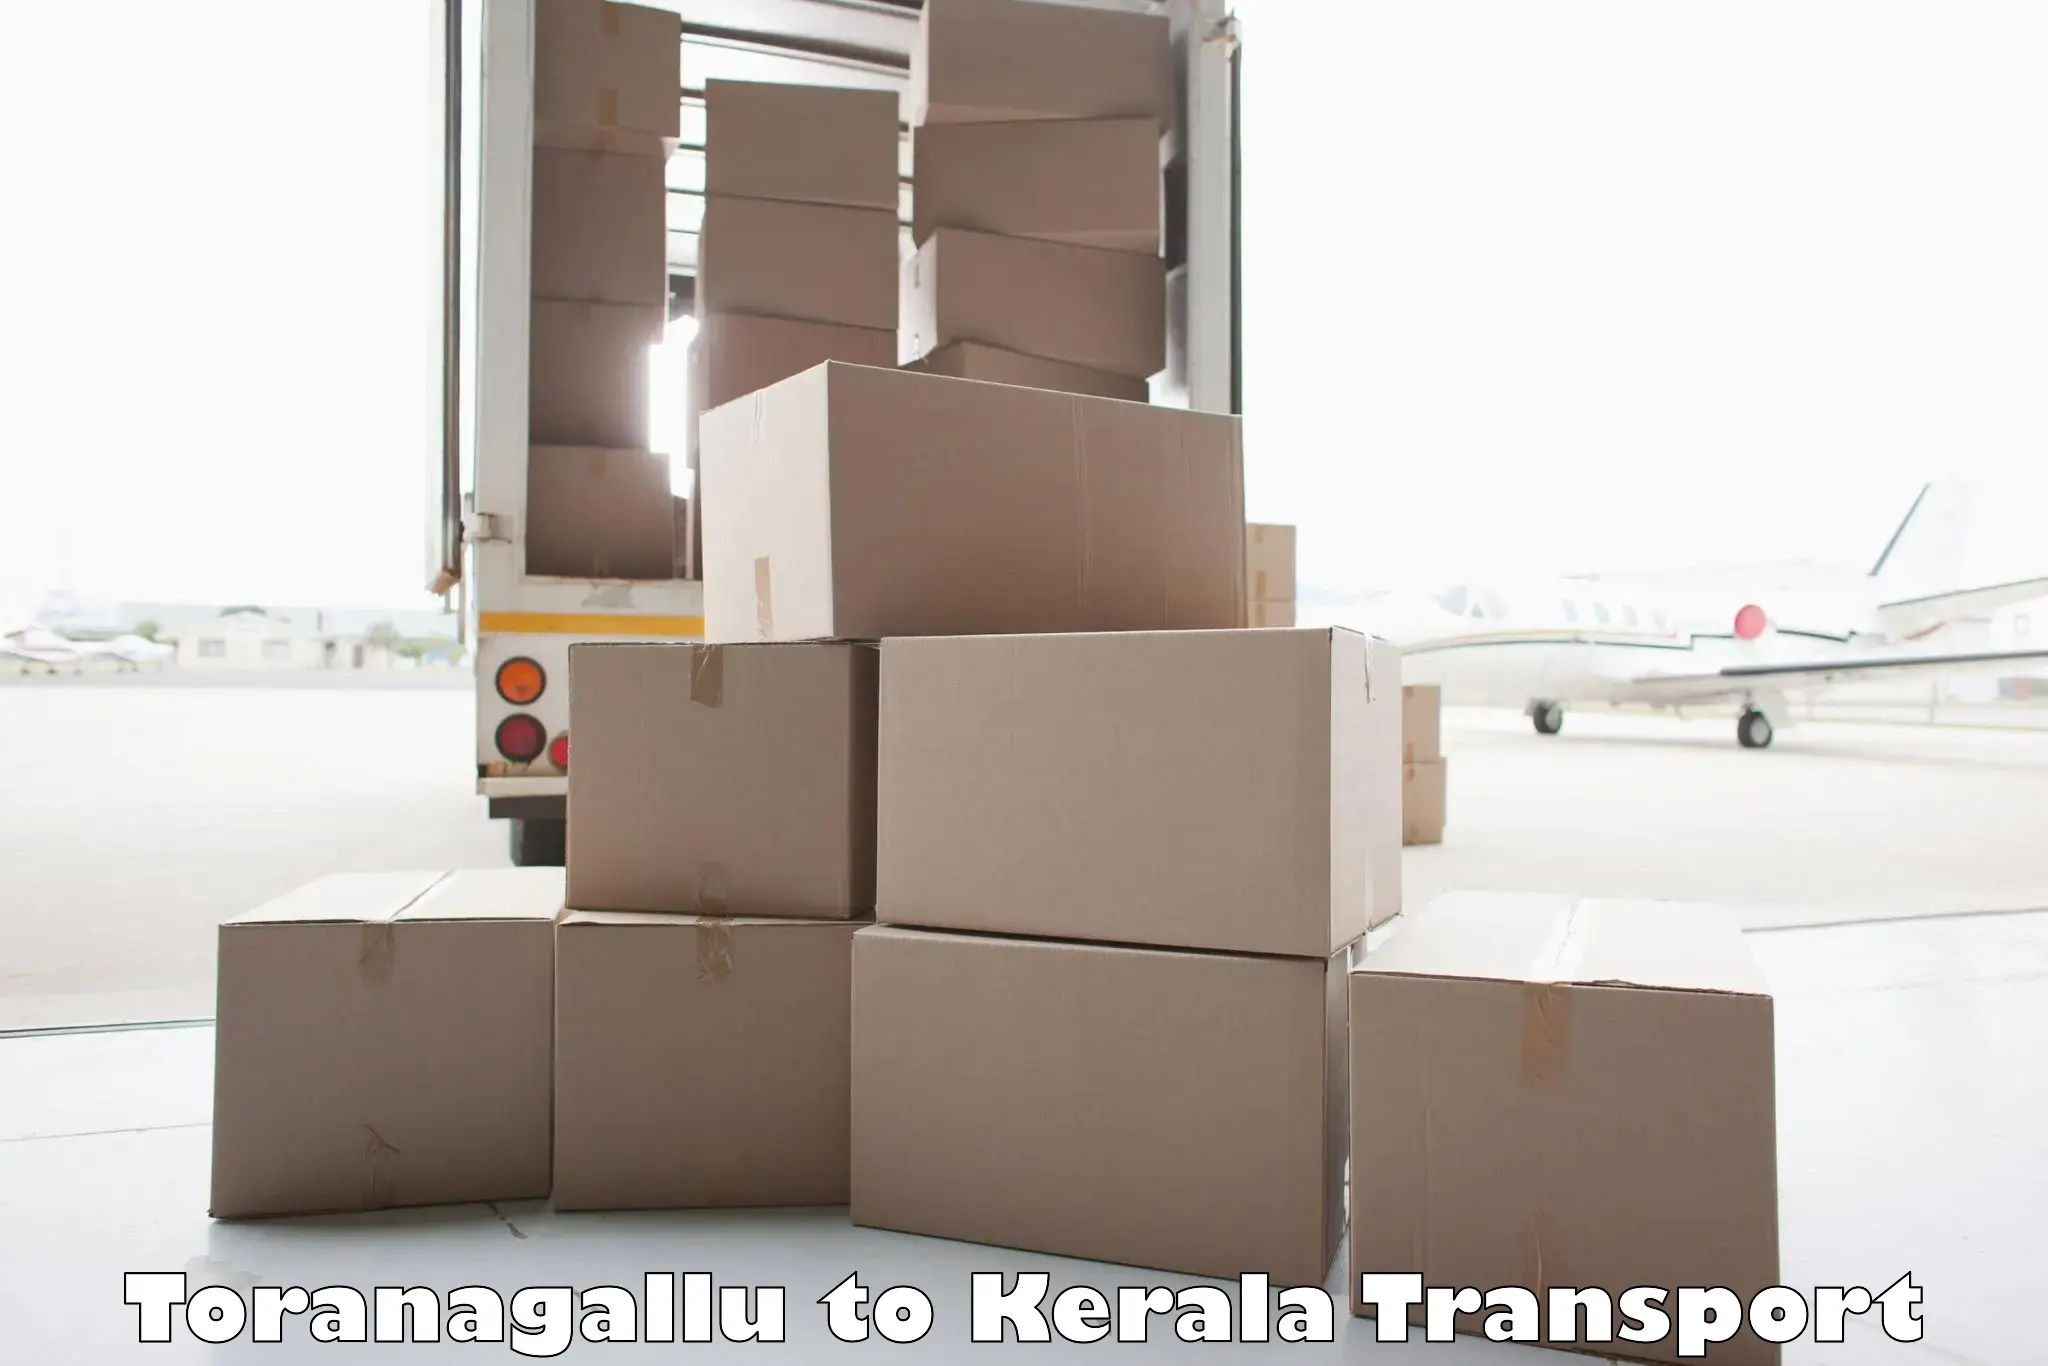 Furniture transport service Toranagallu to Kalluvathukkal